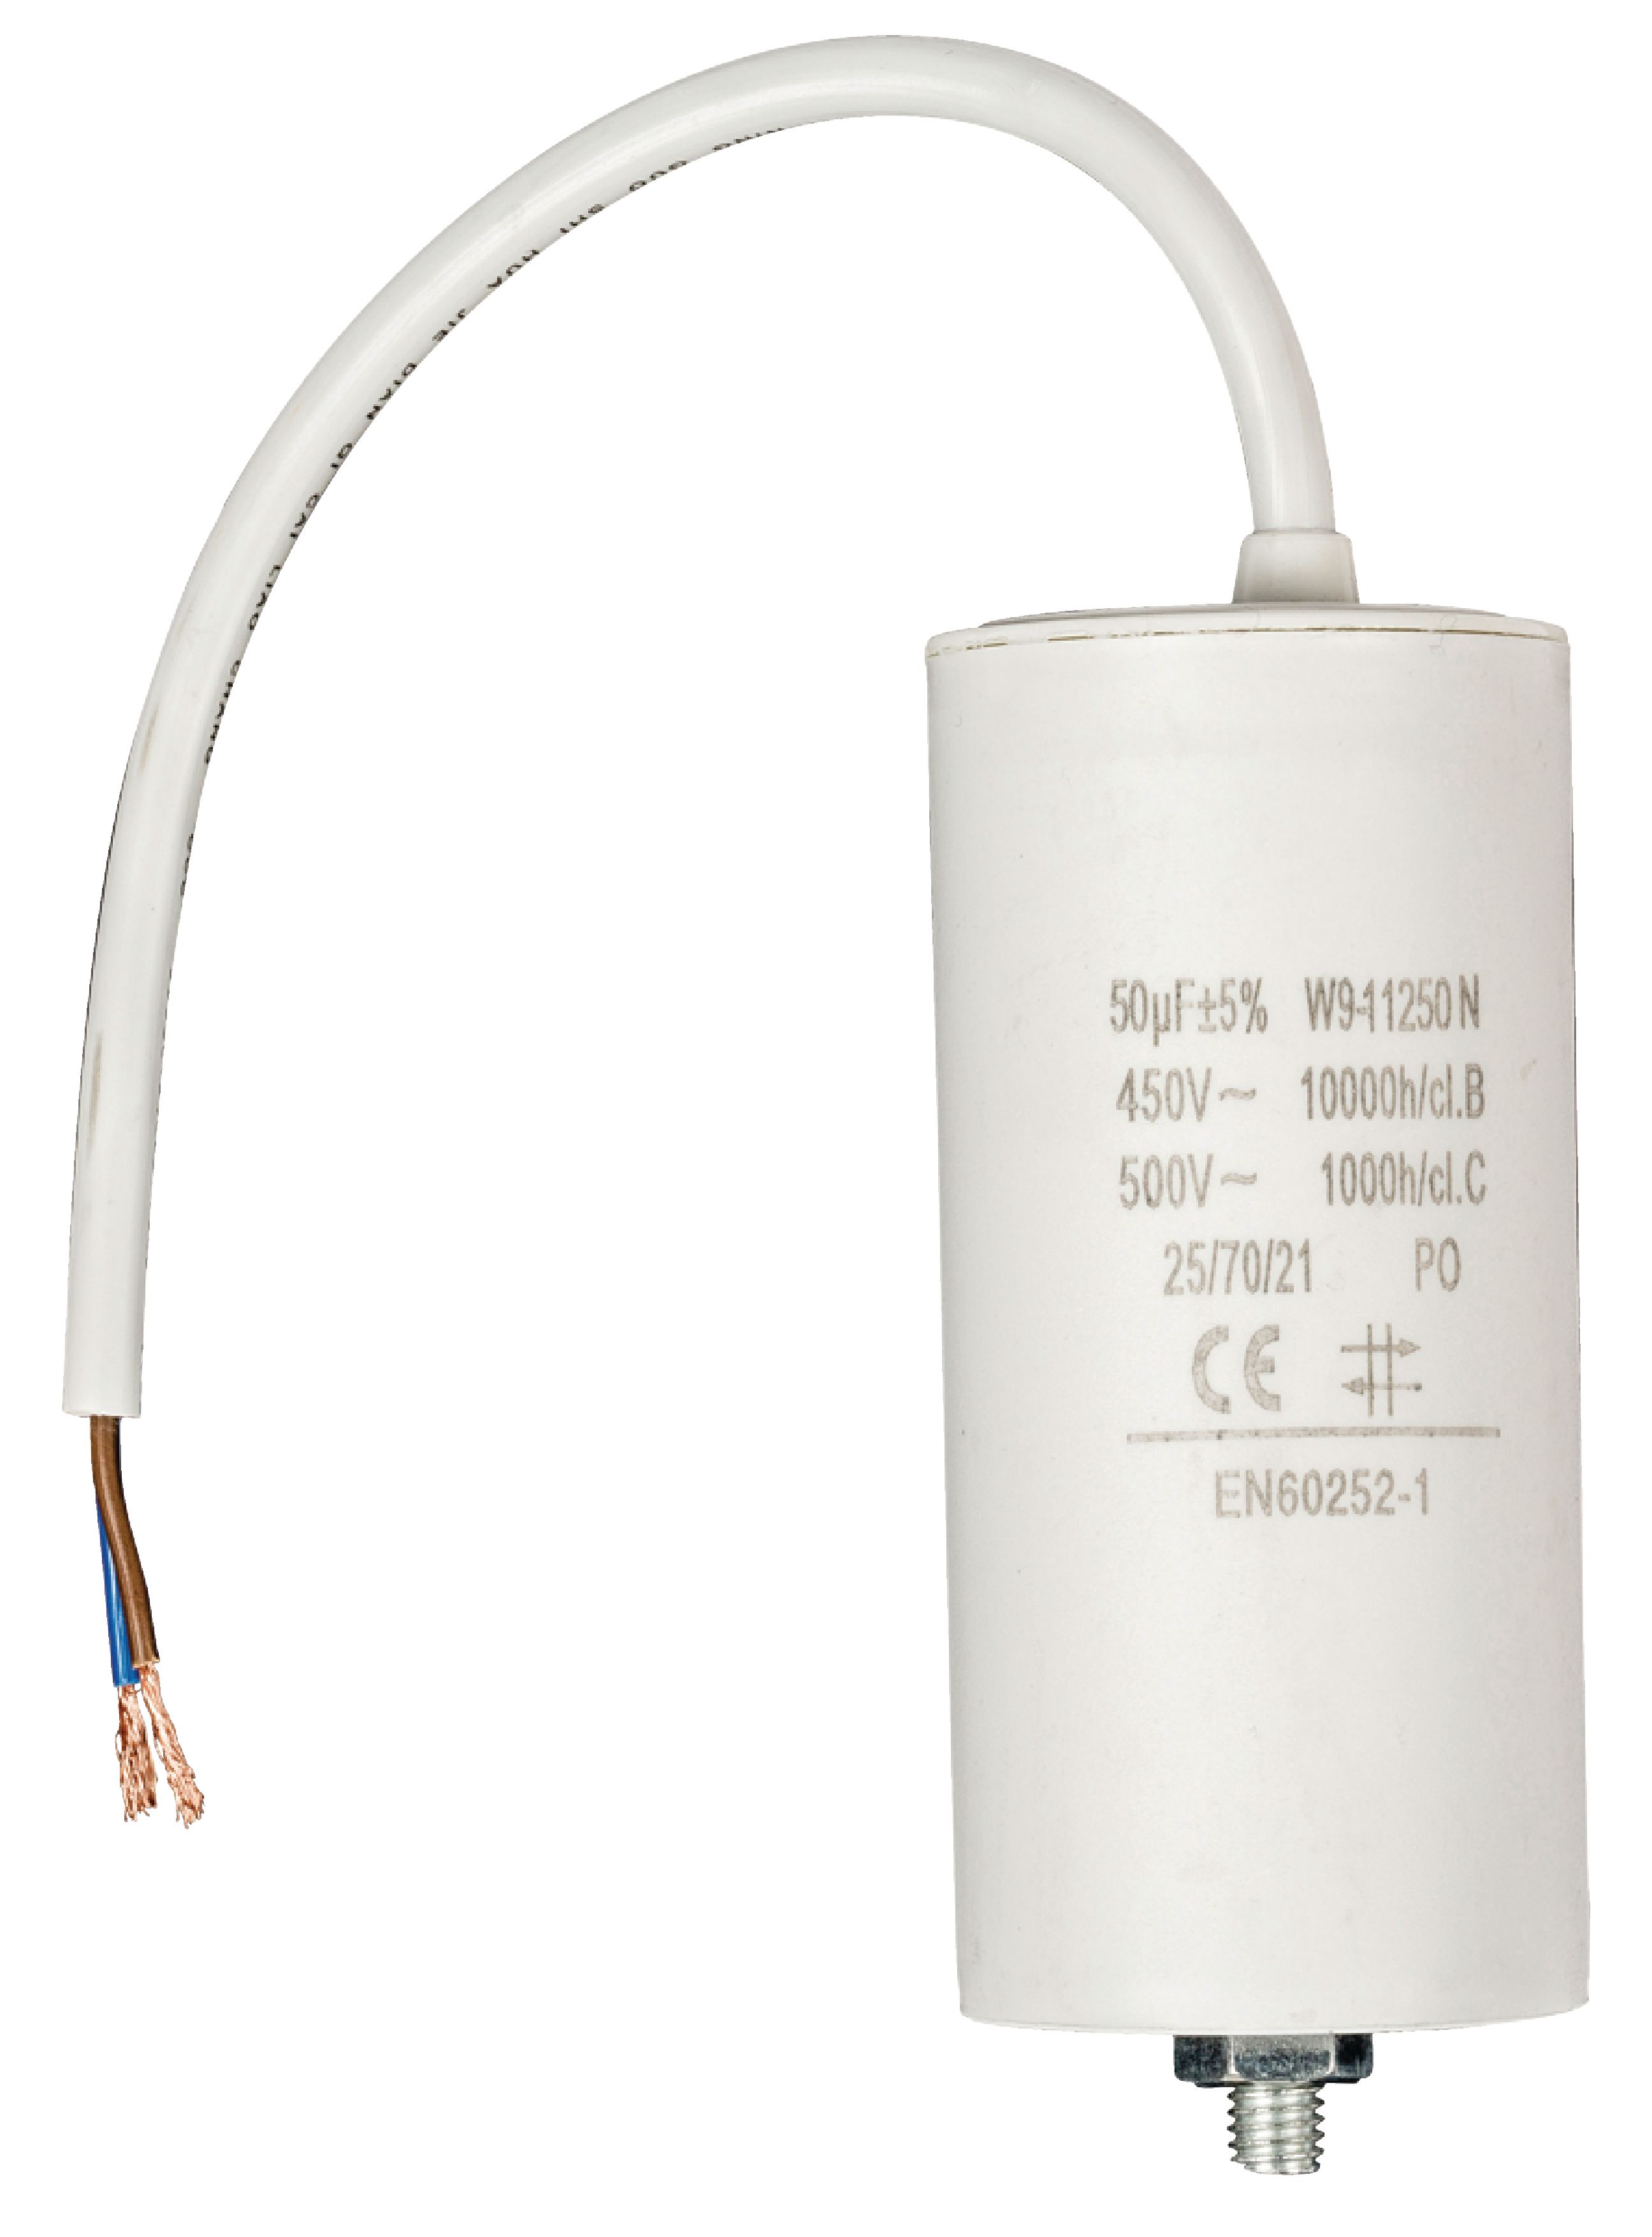 Kondenzátor rozběhový 50uf / 450 V s kabelem (W9-11250N)